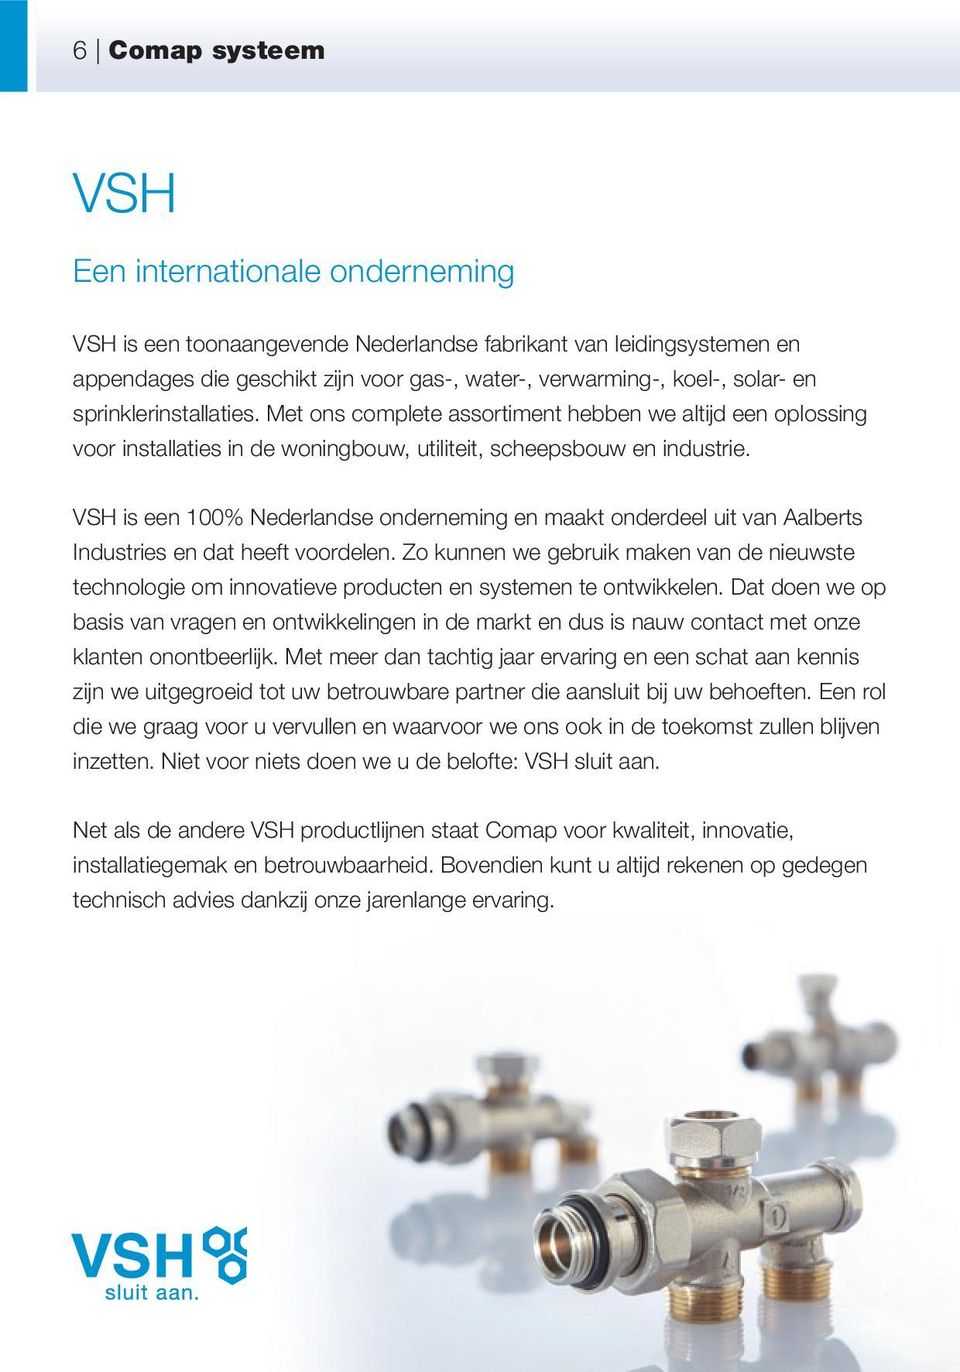 VSH is een 100% Nederlandse onderneming en maakt onderdeel uit van Aalberts Industries en dat heeft voordelen.